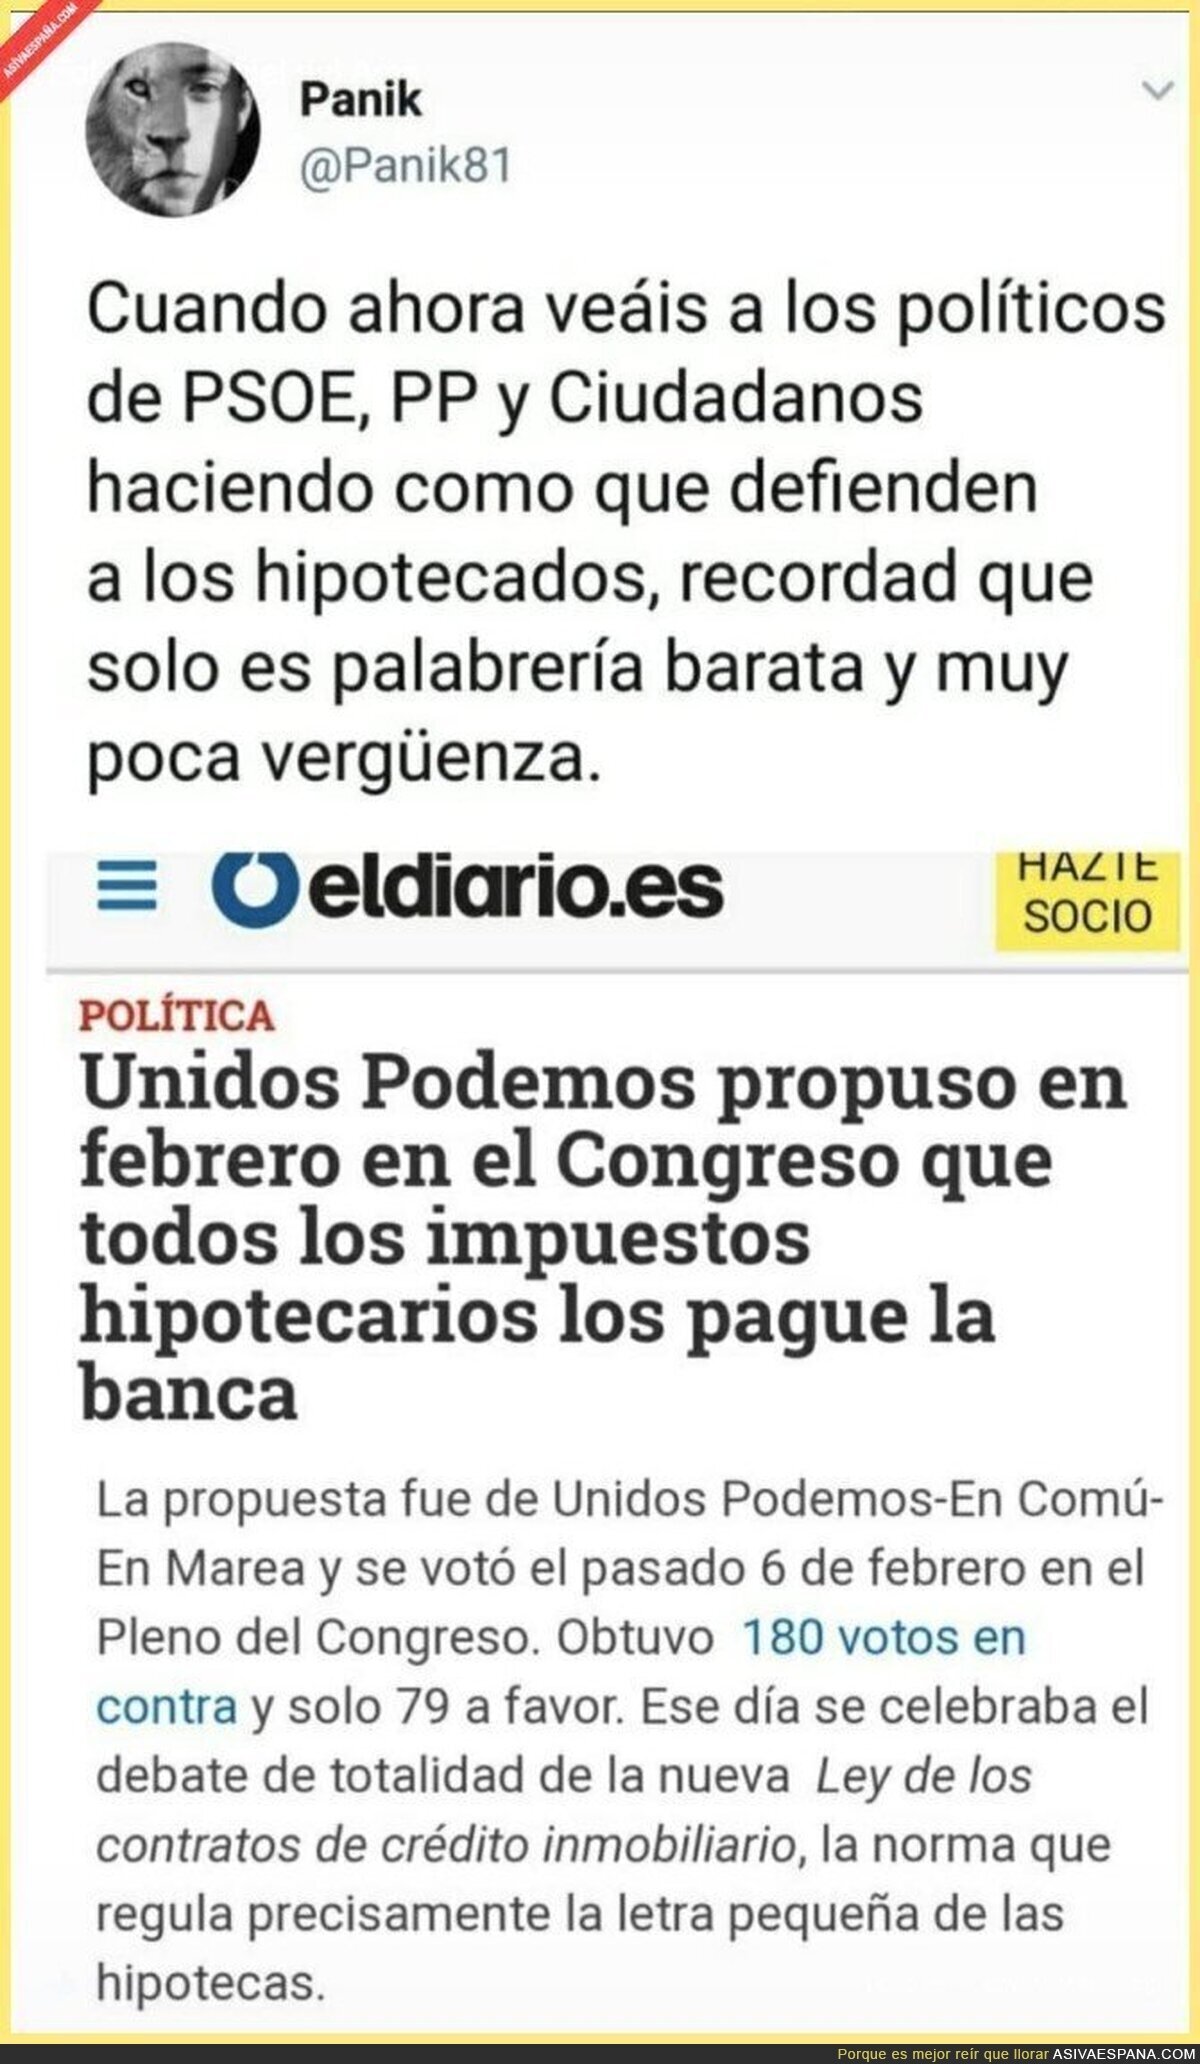 La derecha sigue con las Fake News acusando a Podemos de subir a los clientes los impuestos hipotecarios...